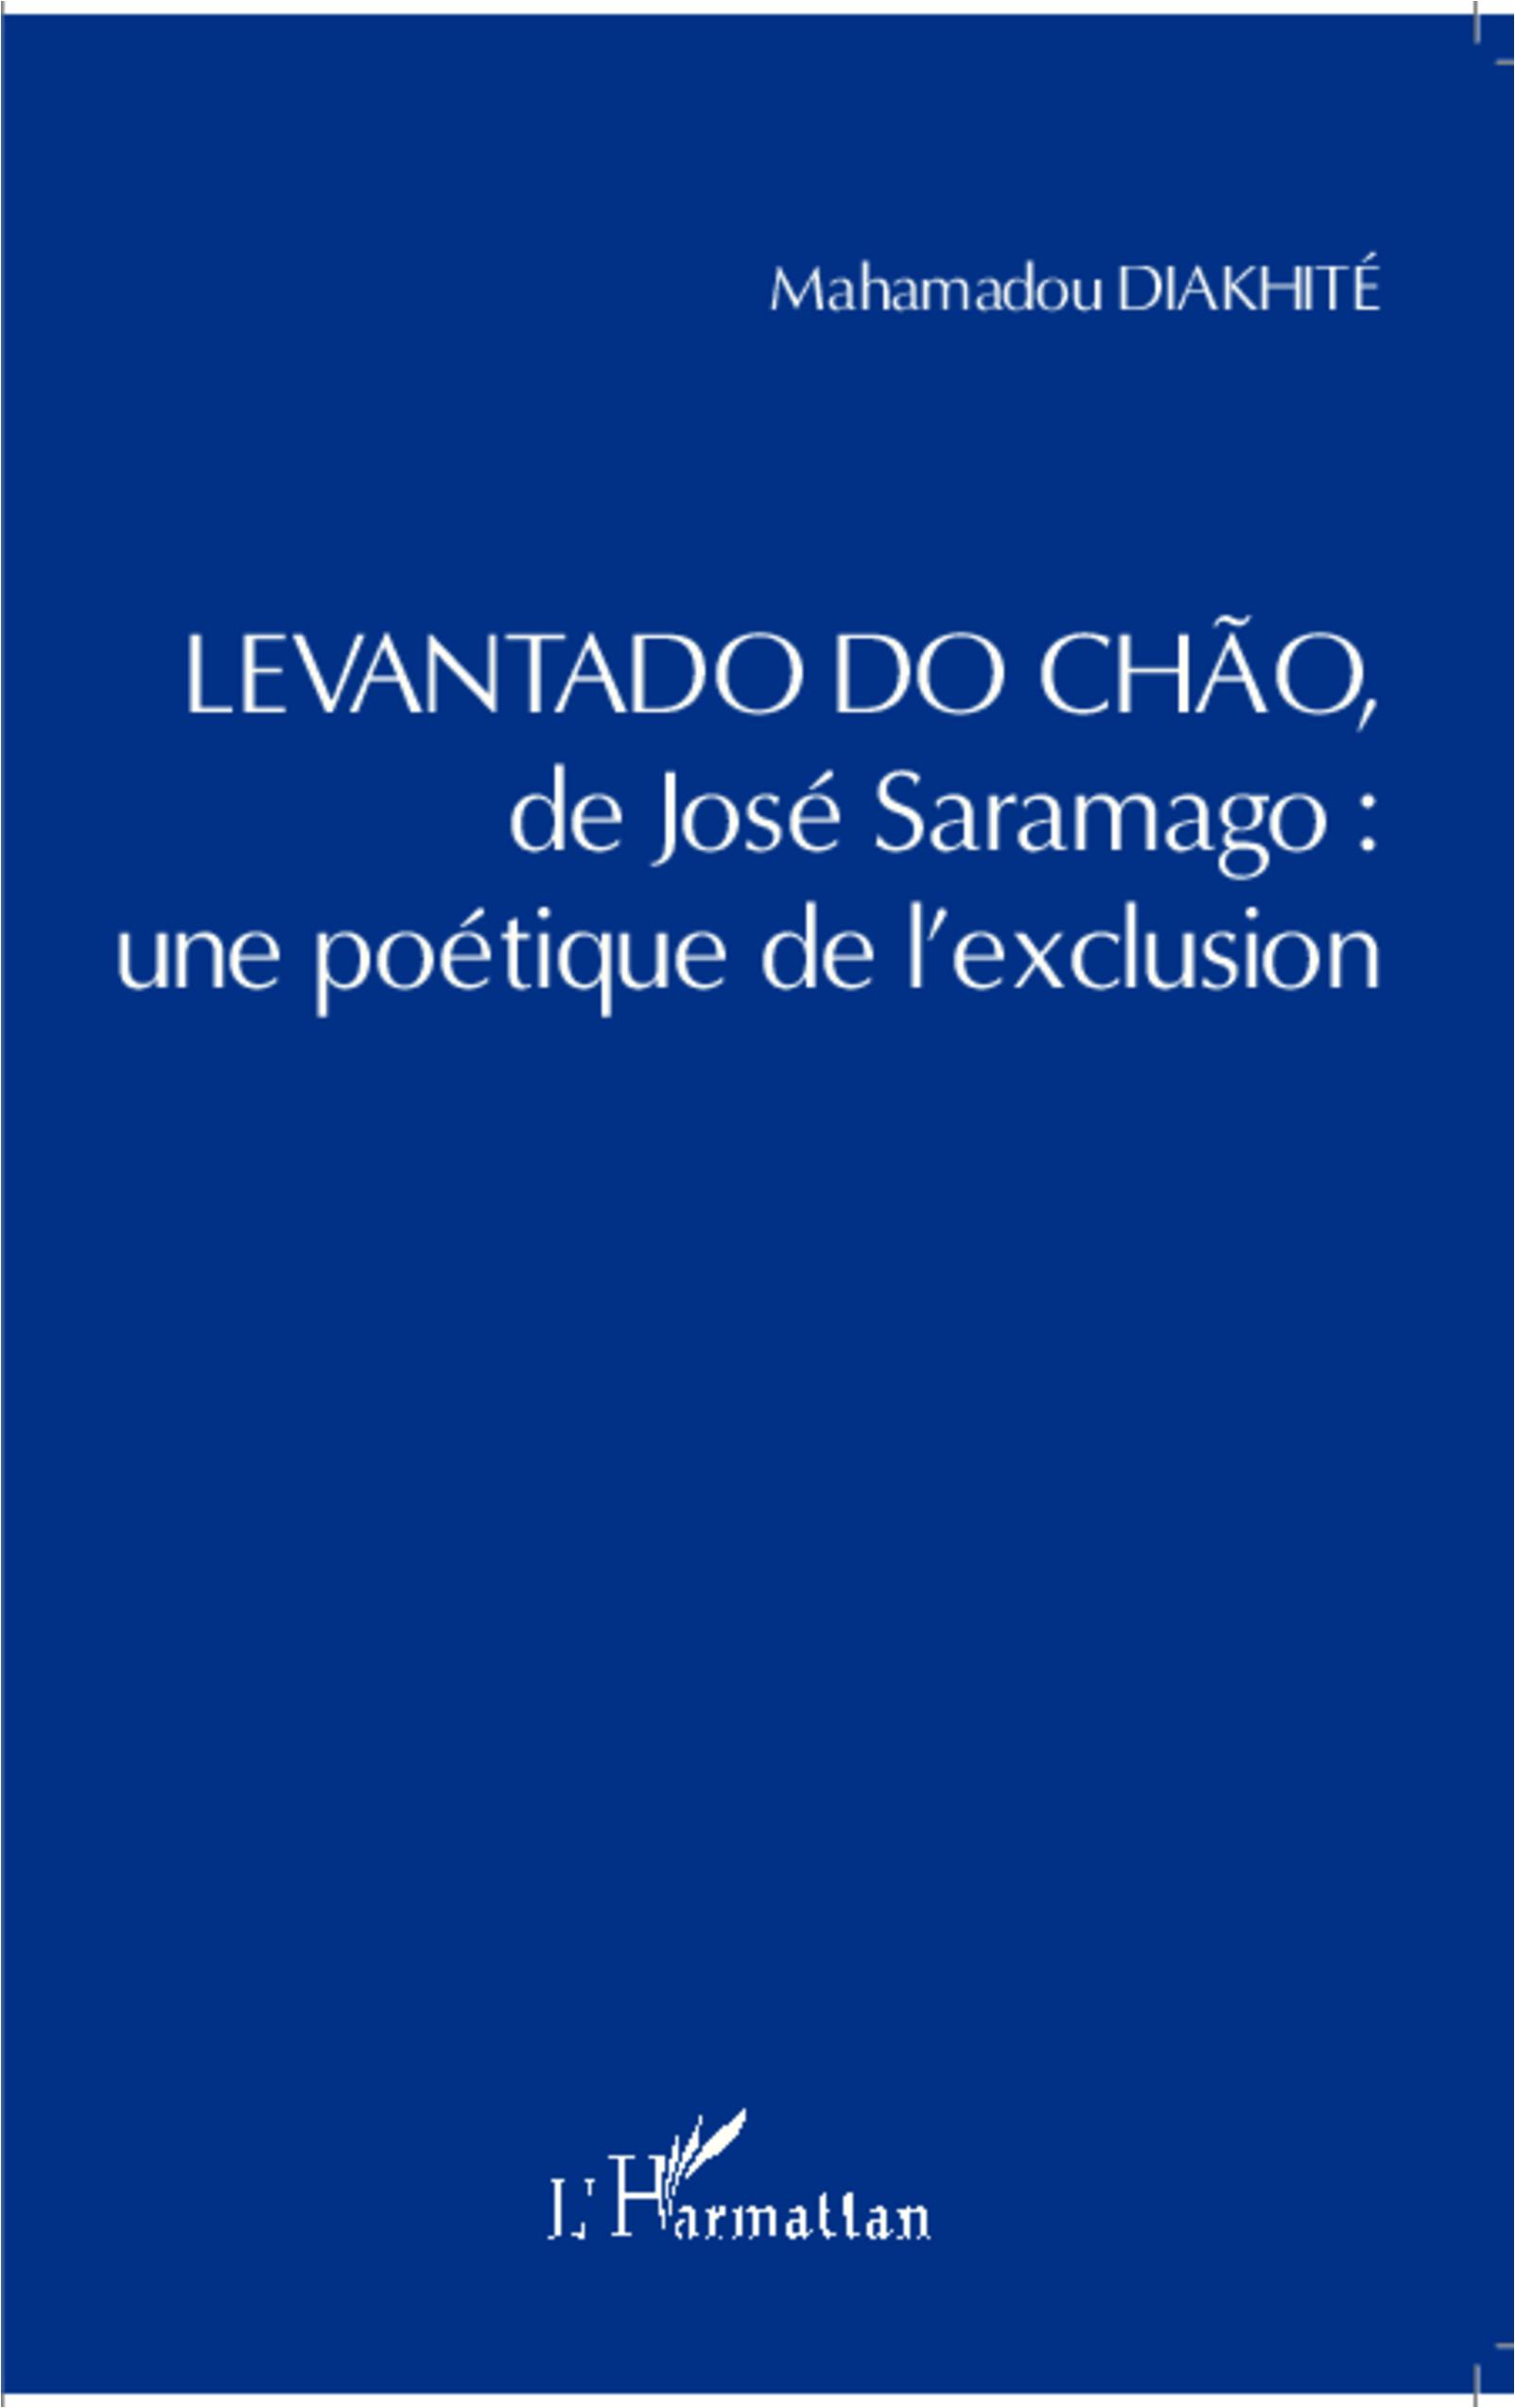 em>Levantado do Chao de José Saramago : une poétique de l exclusion - Diakhite, Mahamadou